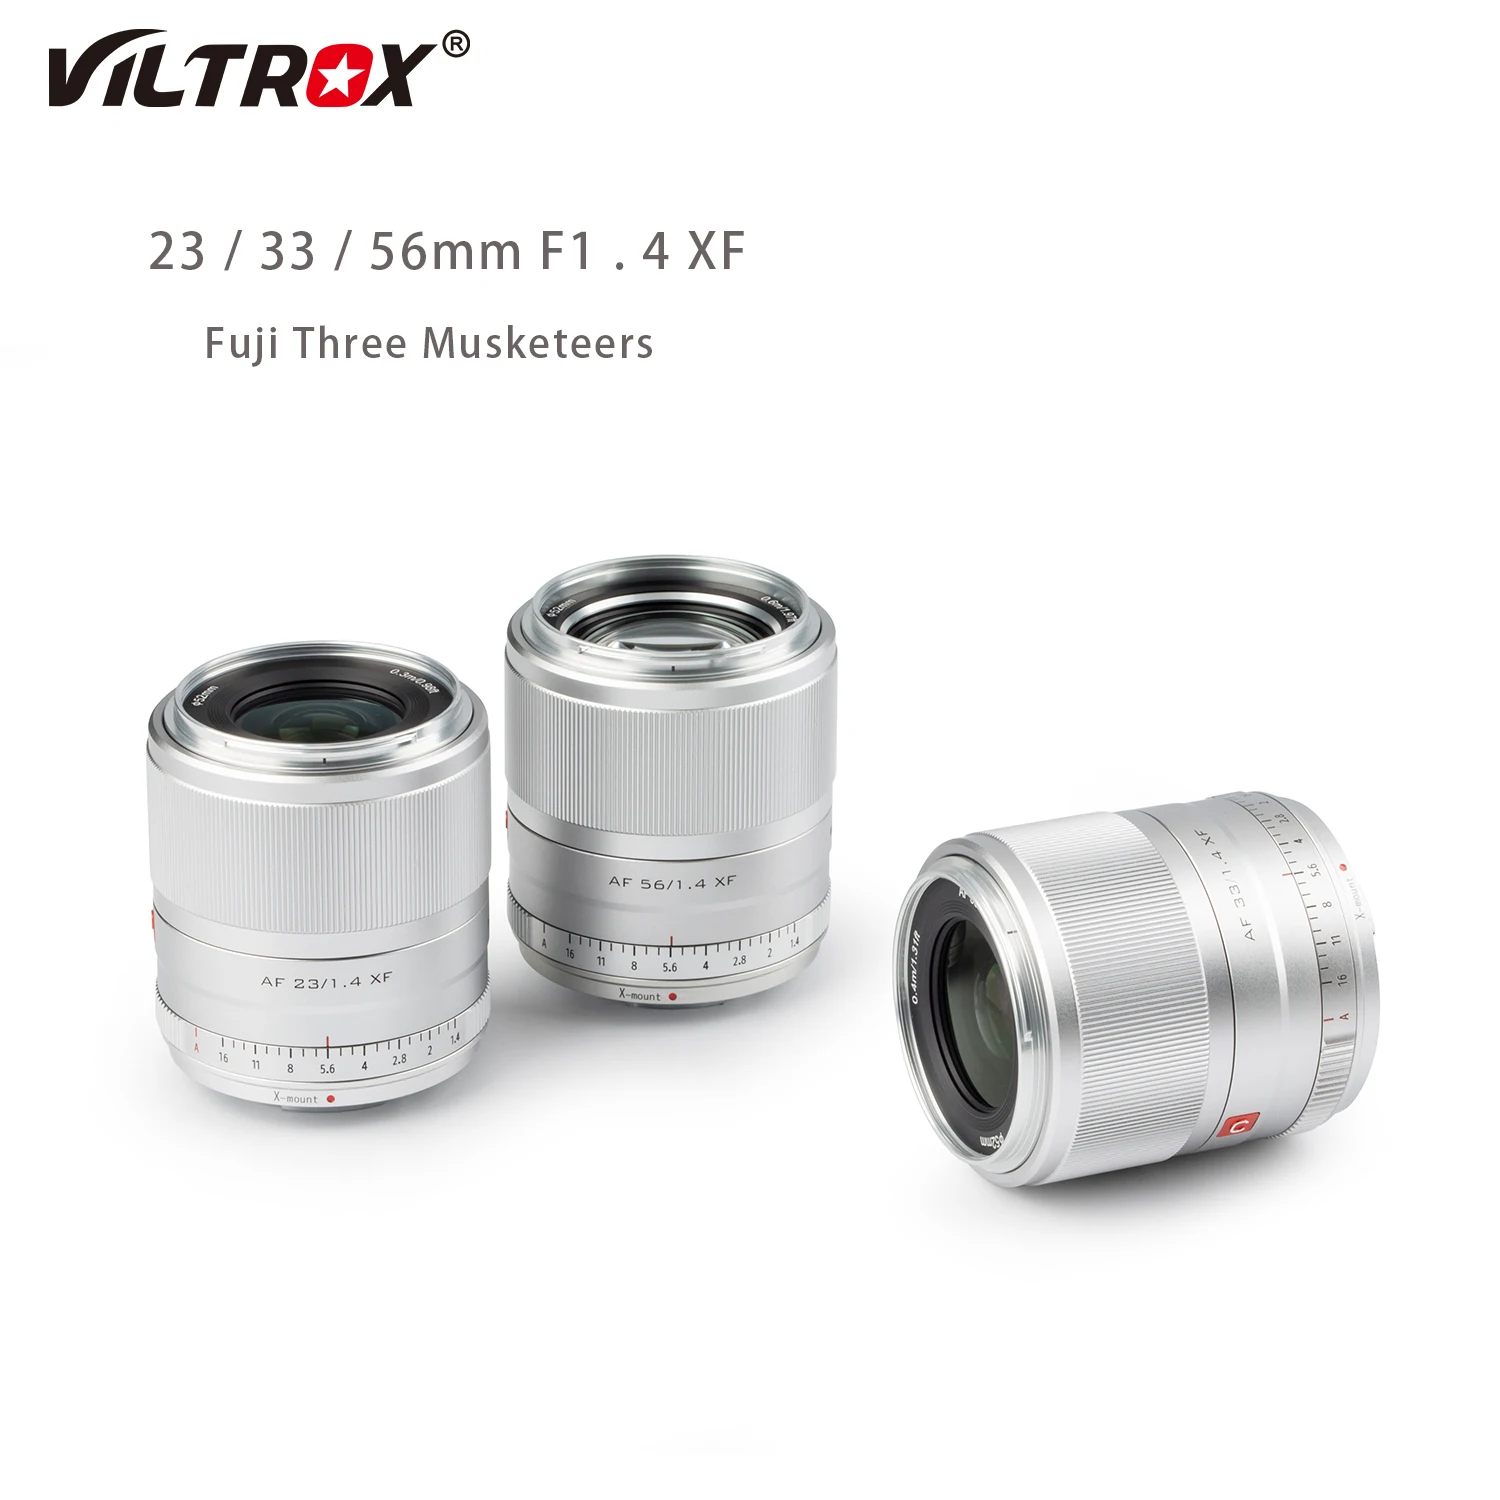 

VILTROX 33mm F1.4 XF Auto Focus Fixed Focus APS-C Portrait Lens for Fujifilm Fuji X-Mount Camera Lens X-T3 X-T2 X-H1 X-T30 X-T20